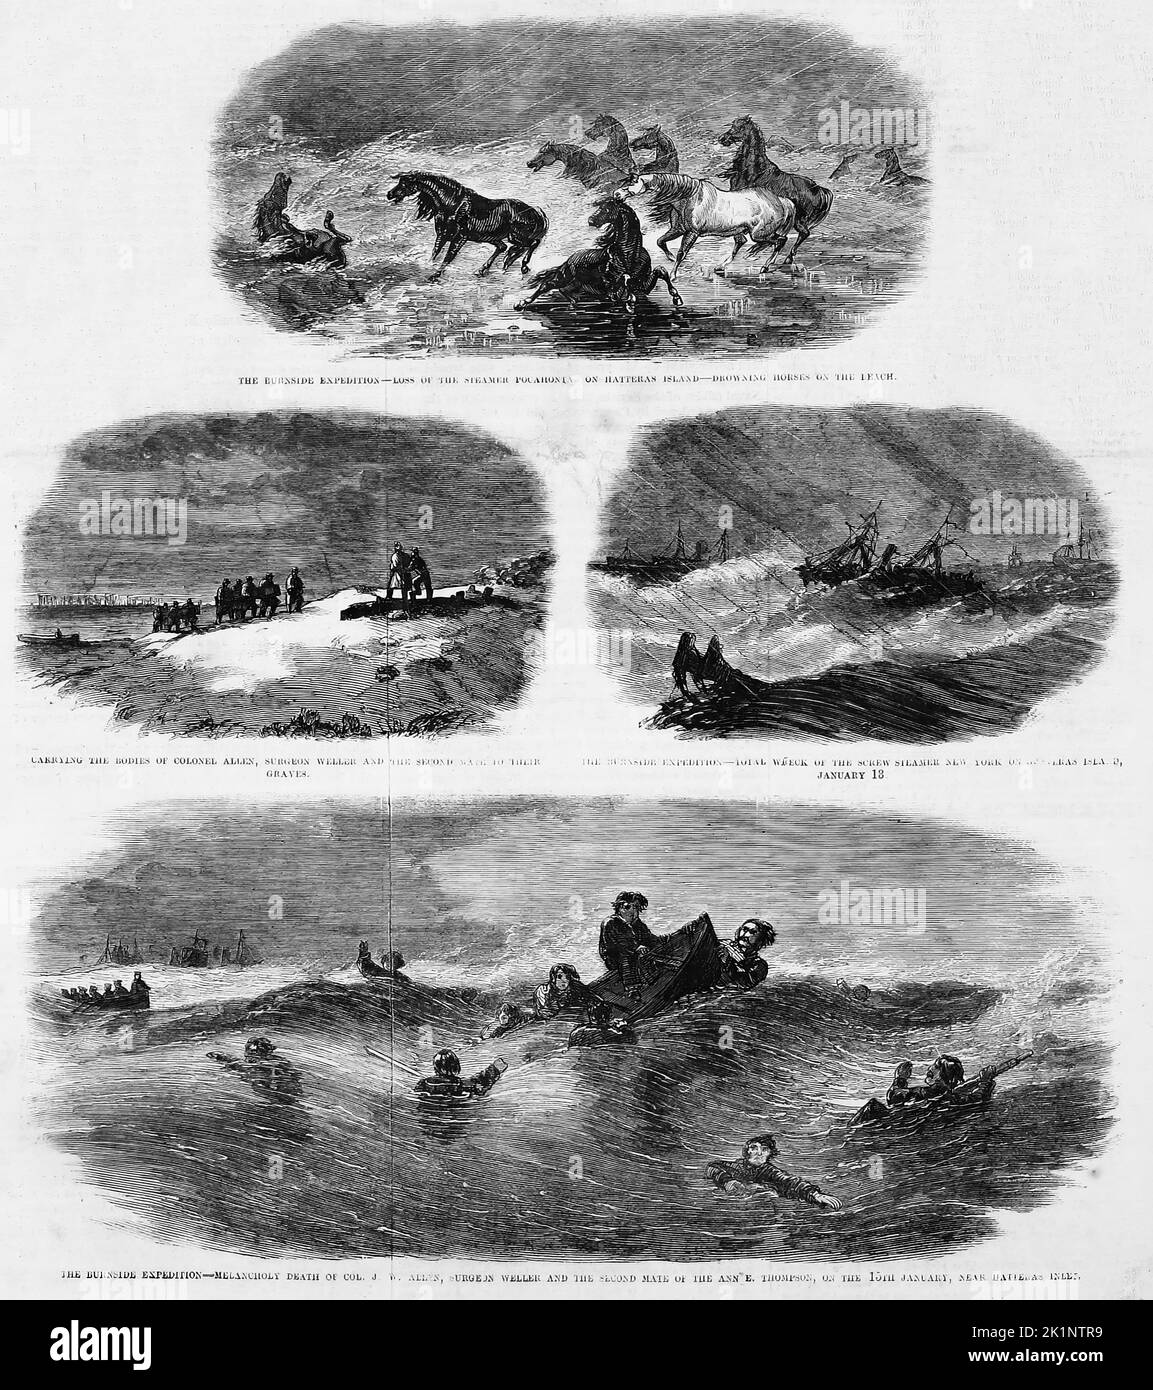 Incidents tragiques de l'expédition Burnside - perte du bateau à vapeur Pocahontas sur l'île Hatteras, noyade des chevaux sur la plage - portant les corps du colonel Allen, le chirurgien Weller et le deuxième compagnon à leurs tombes - épave totale du bateau à vapeur à vis New York sur l'île Hatteras, 18 janvier, 1862 - décès par mélancolie du colonel J. W. Allen, chirurgien Weller et du second compagnon de la Ann E. Thompson, sur 15 janvier 1862, près de Hatteras Inlet. Illustration de la guerre de Sécession américaine du 19th siècle tirée du journal illustré de Frank Leslie Banque D'Images